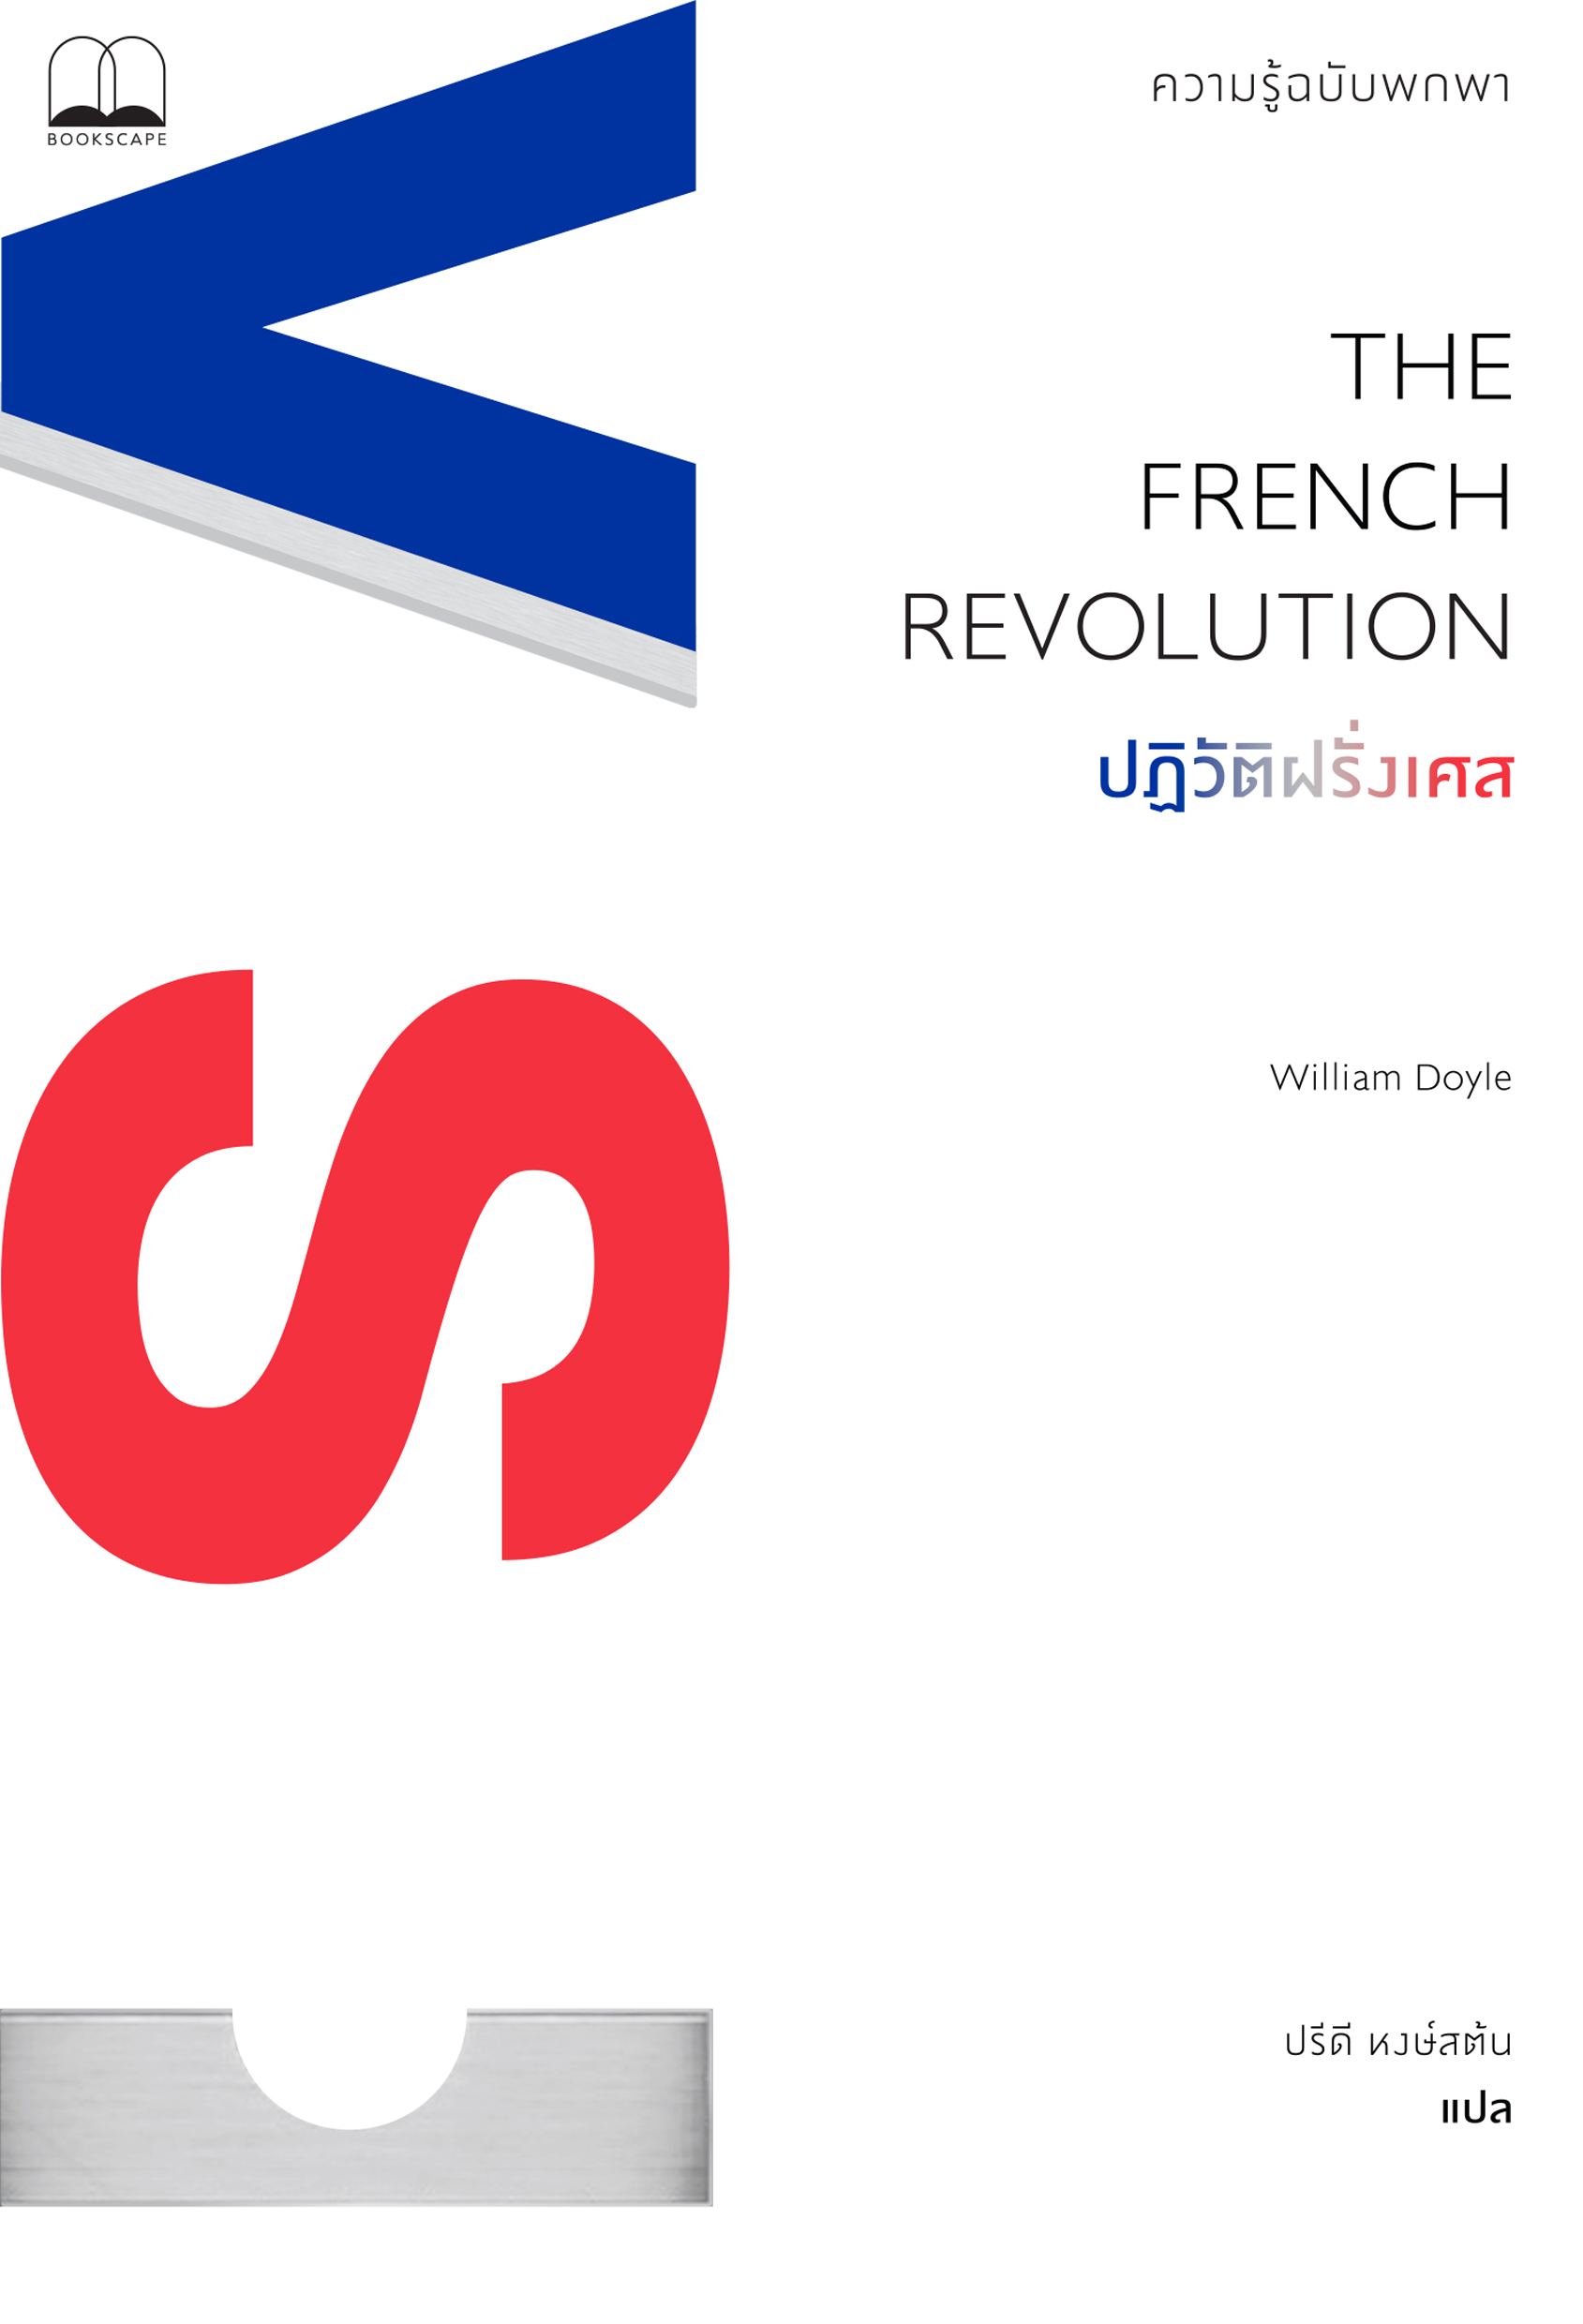 ปฏิวัติฝรั่งเศส: ความรู้ฉบับพกพา / William Doyle เขียน / ปรีดี หงษ์สต้น แปล / Bookscape